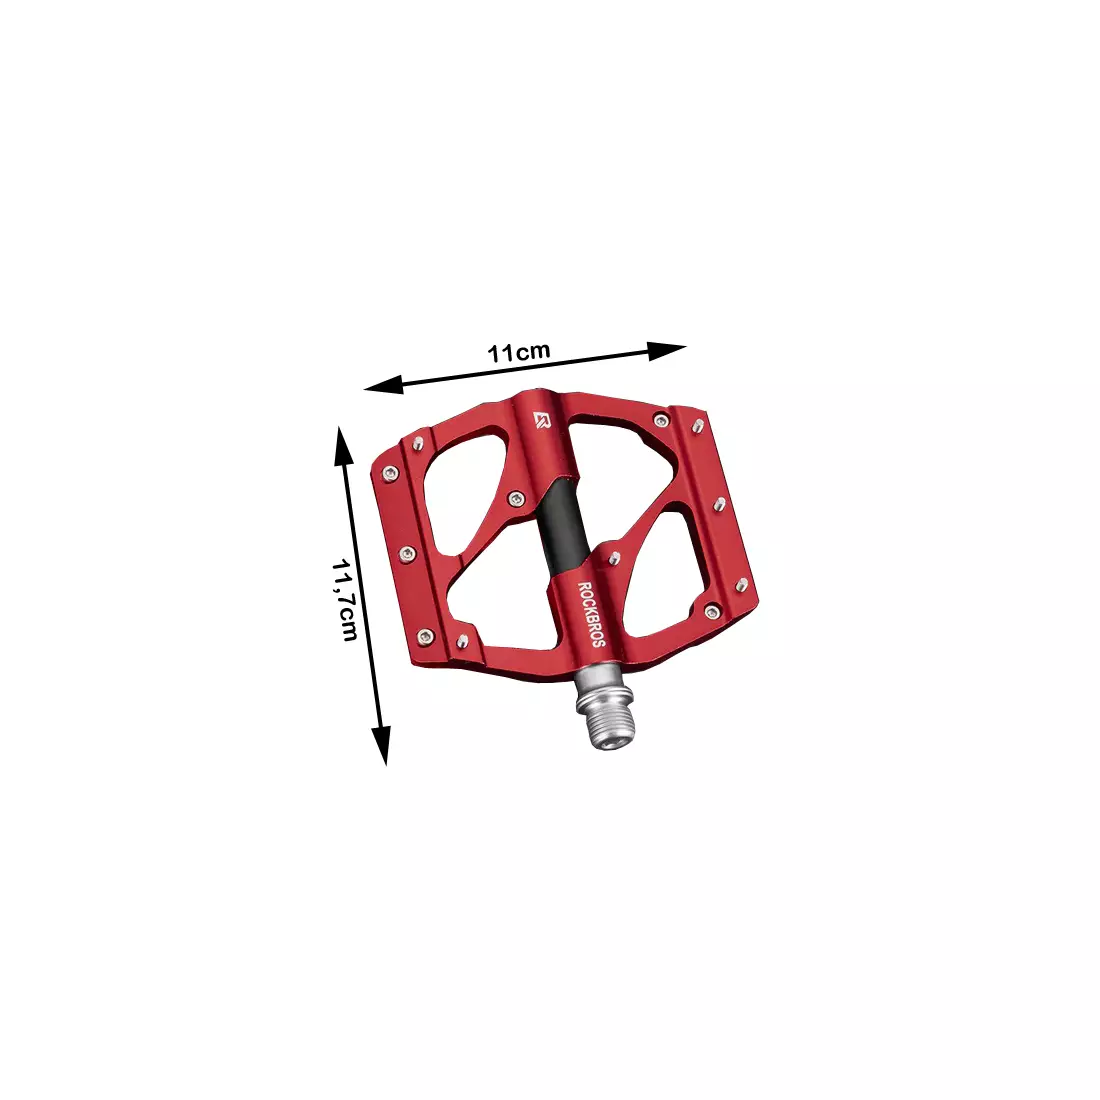 Rockbros pedale cu platformă din aluminiu, roșu 2020-12BRD